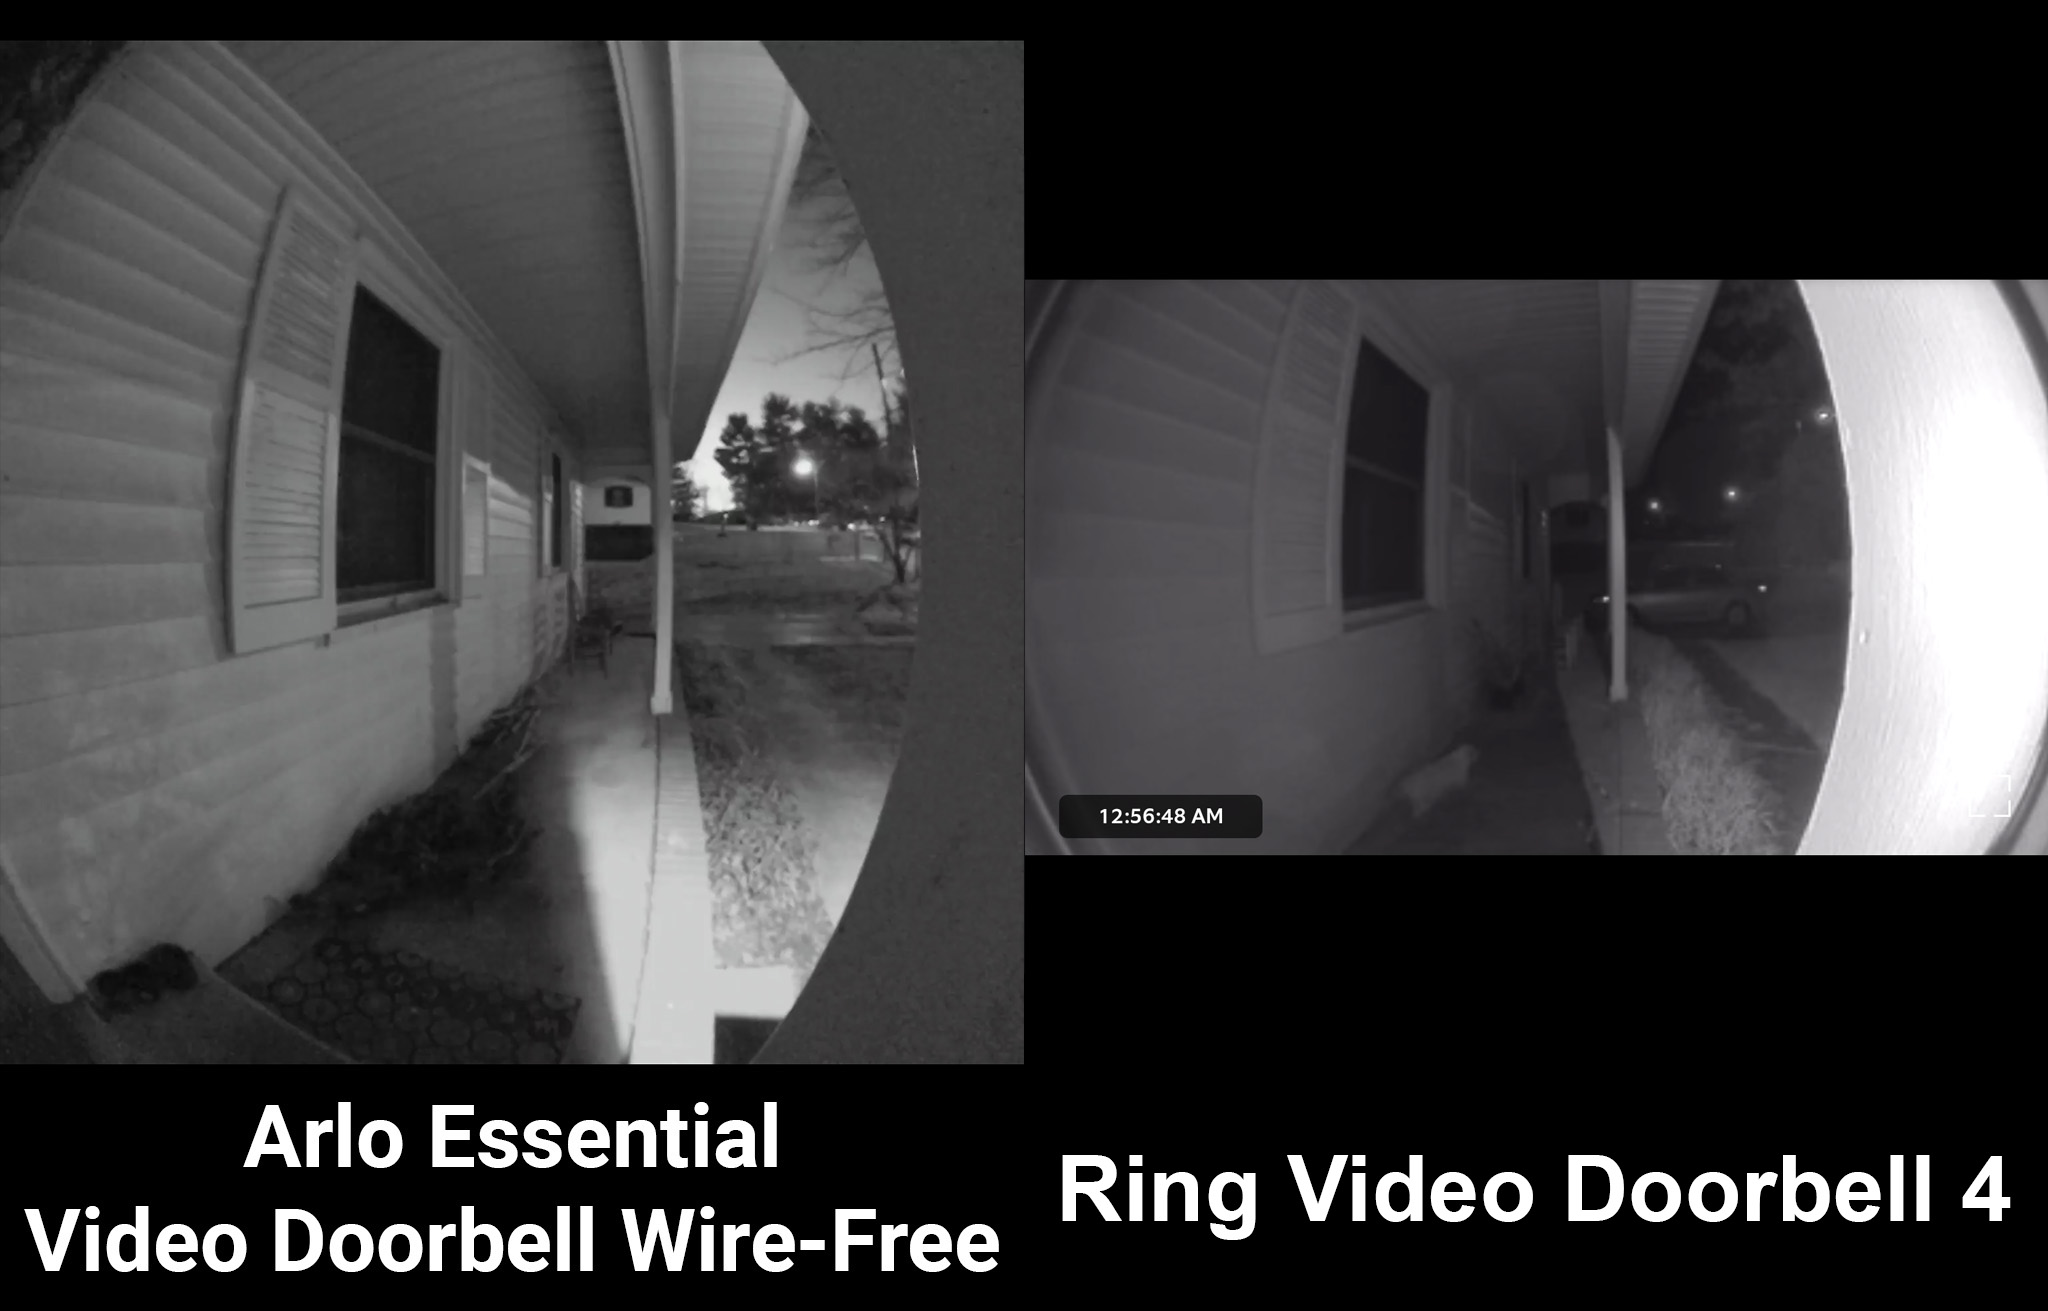 Ring Video Doorbell 4 Vs Arlo Essential Video Doorbell Night Vision